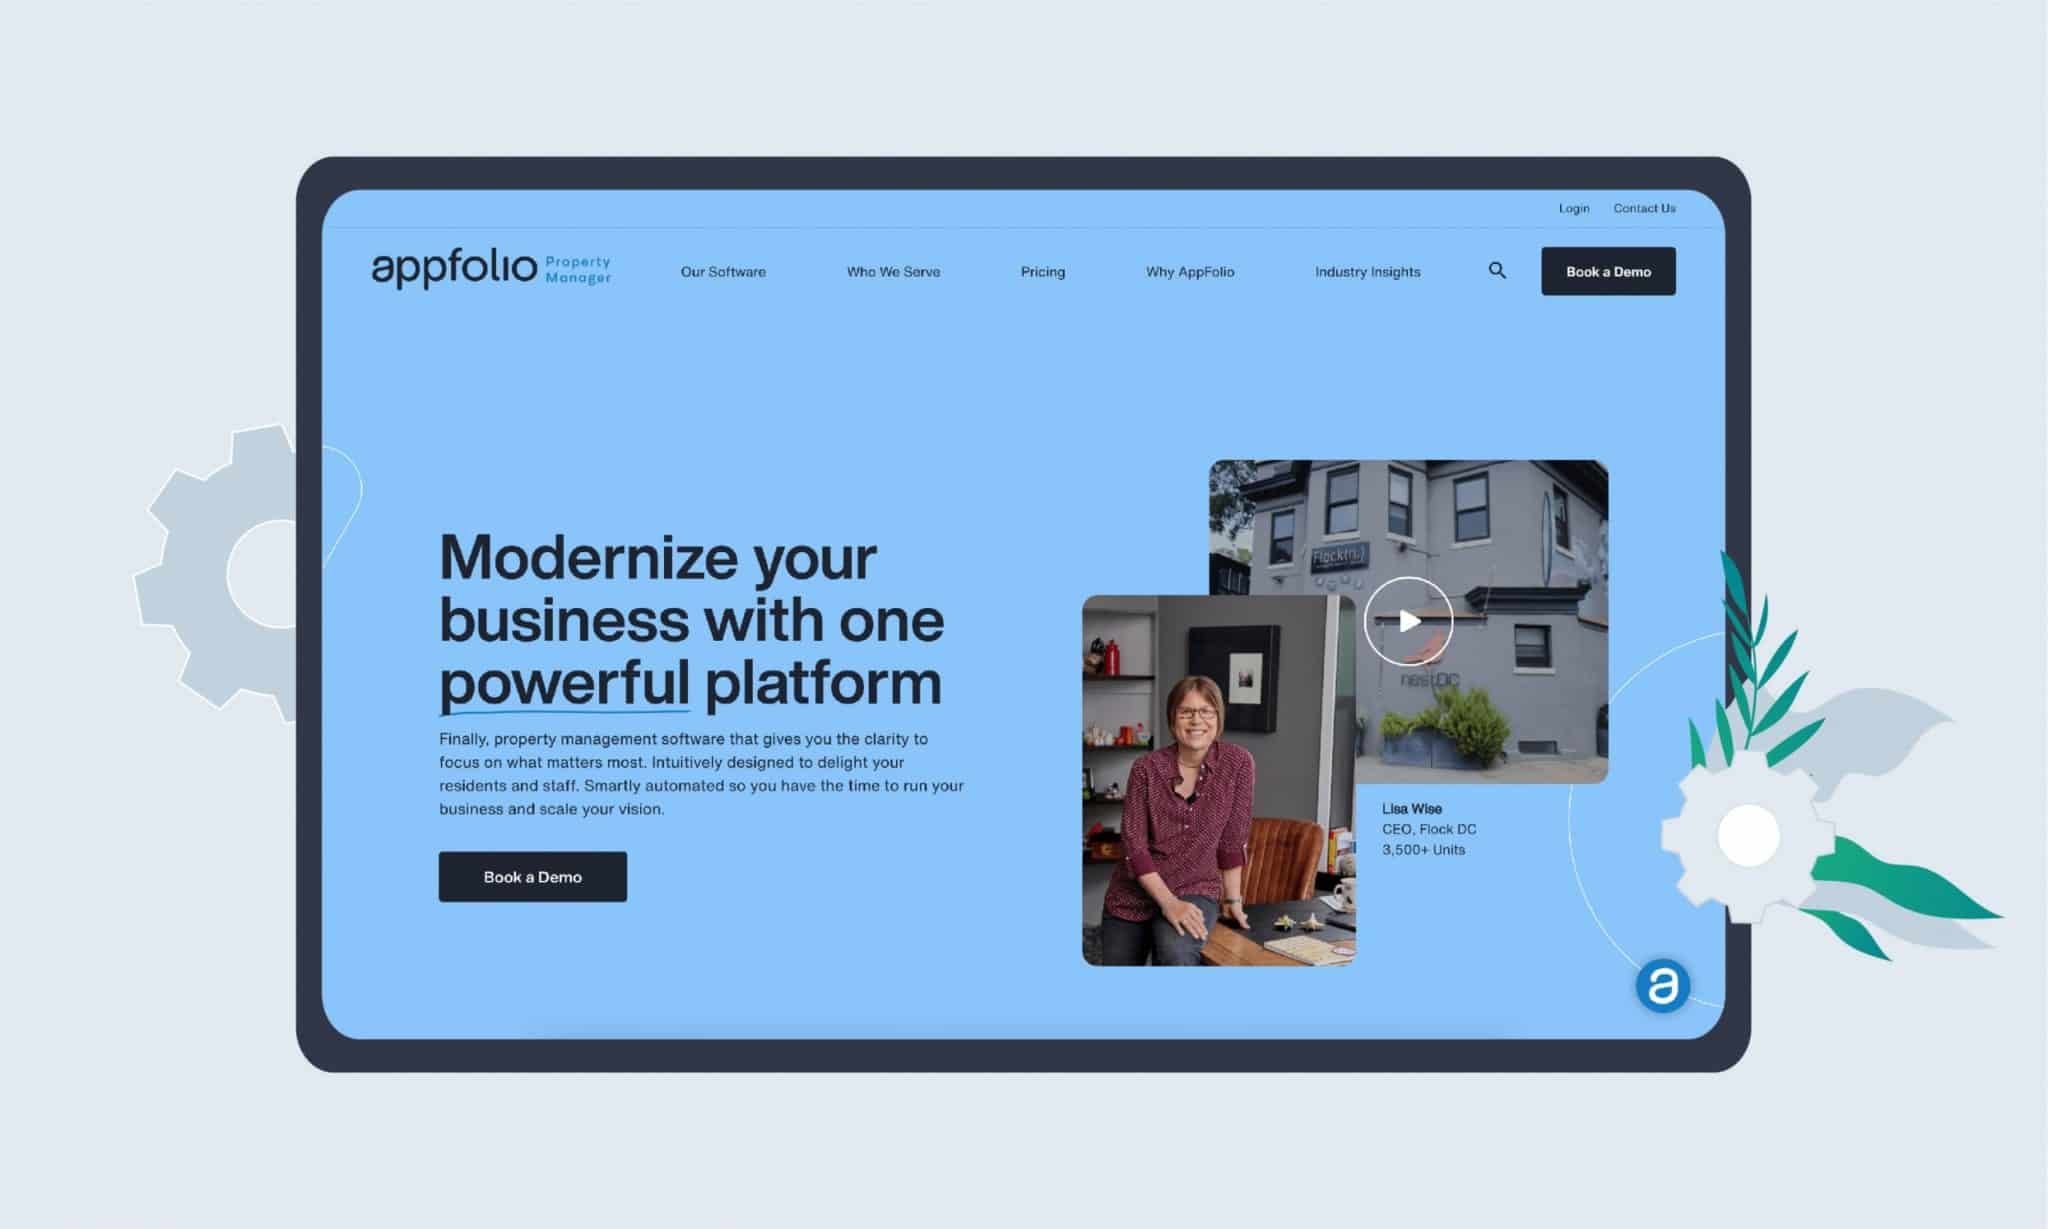 AppFolio as a popular property management platform